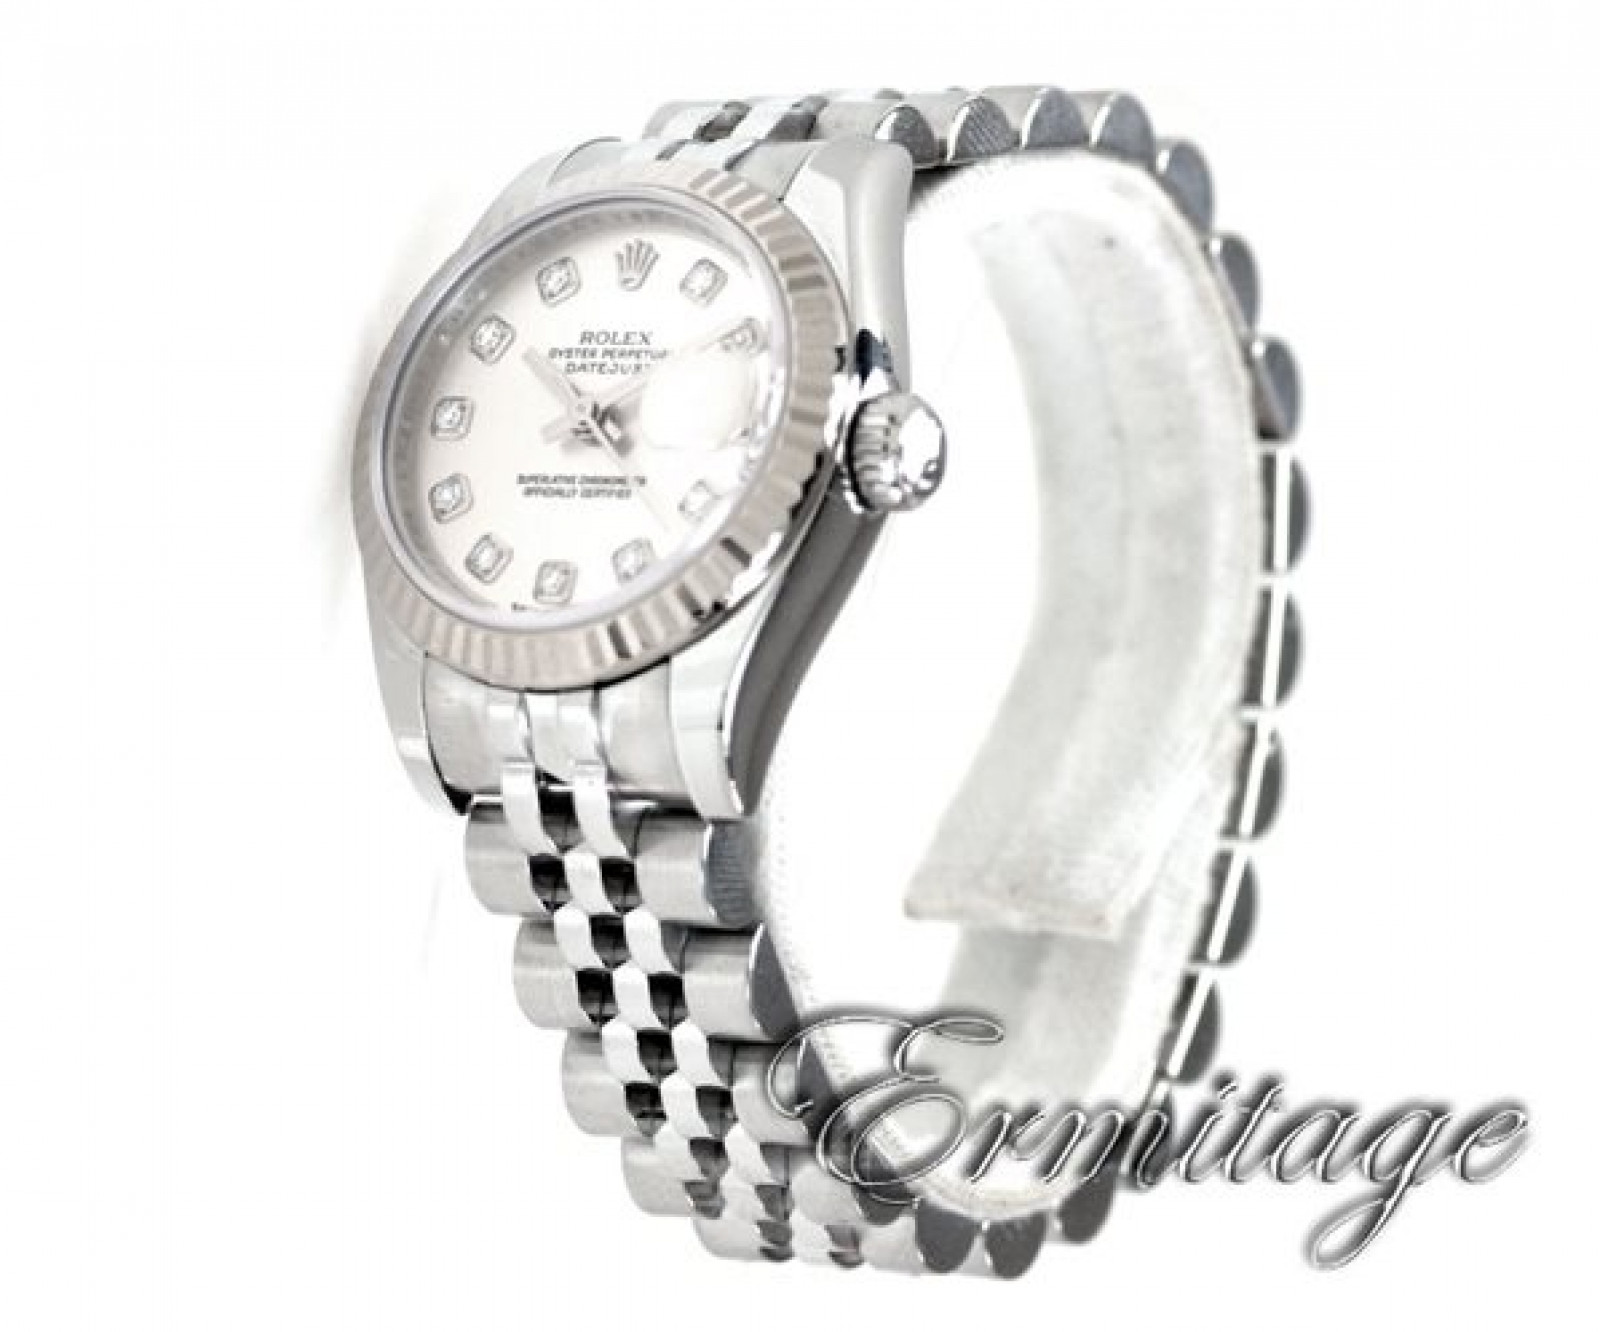 Ladies Rolex Datejust 179174 Diamond Dial